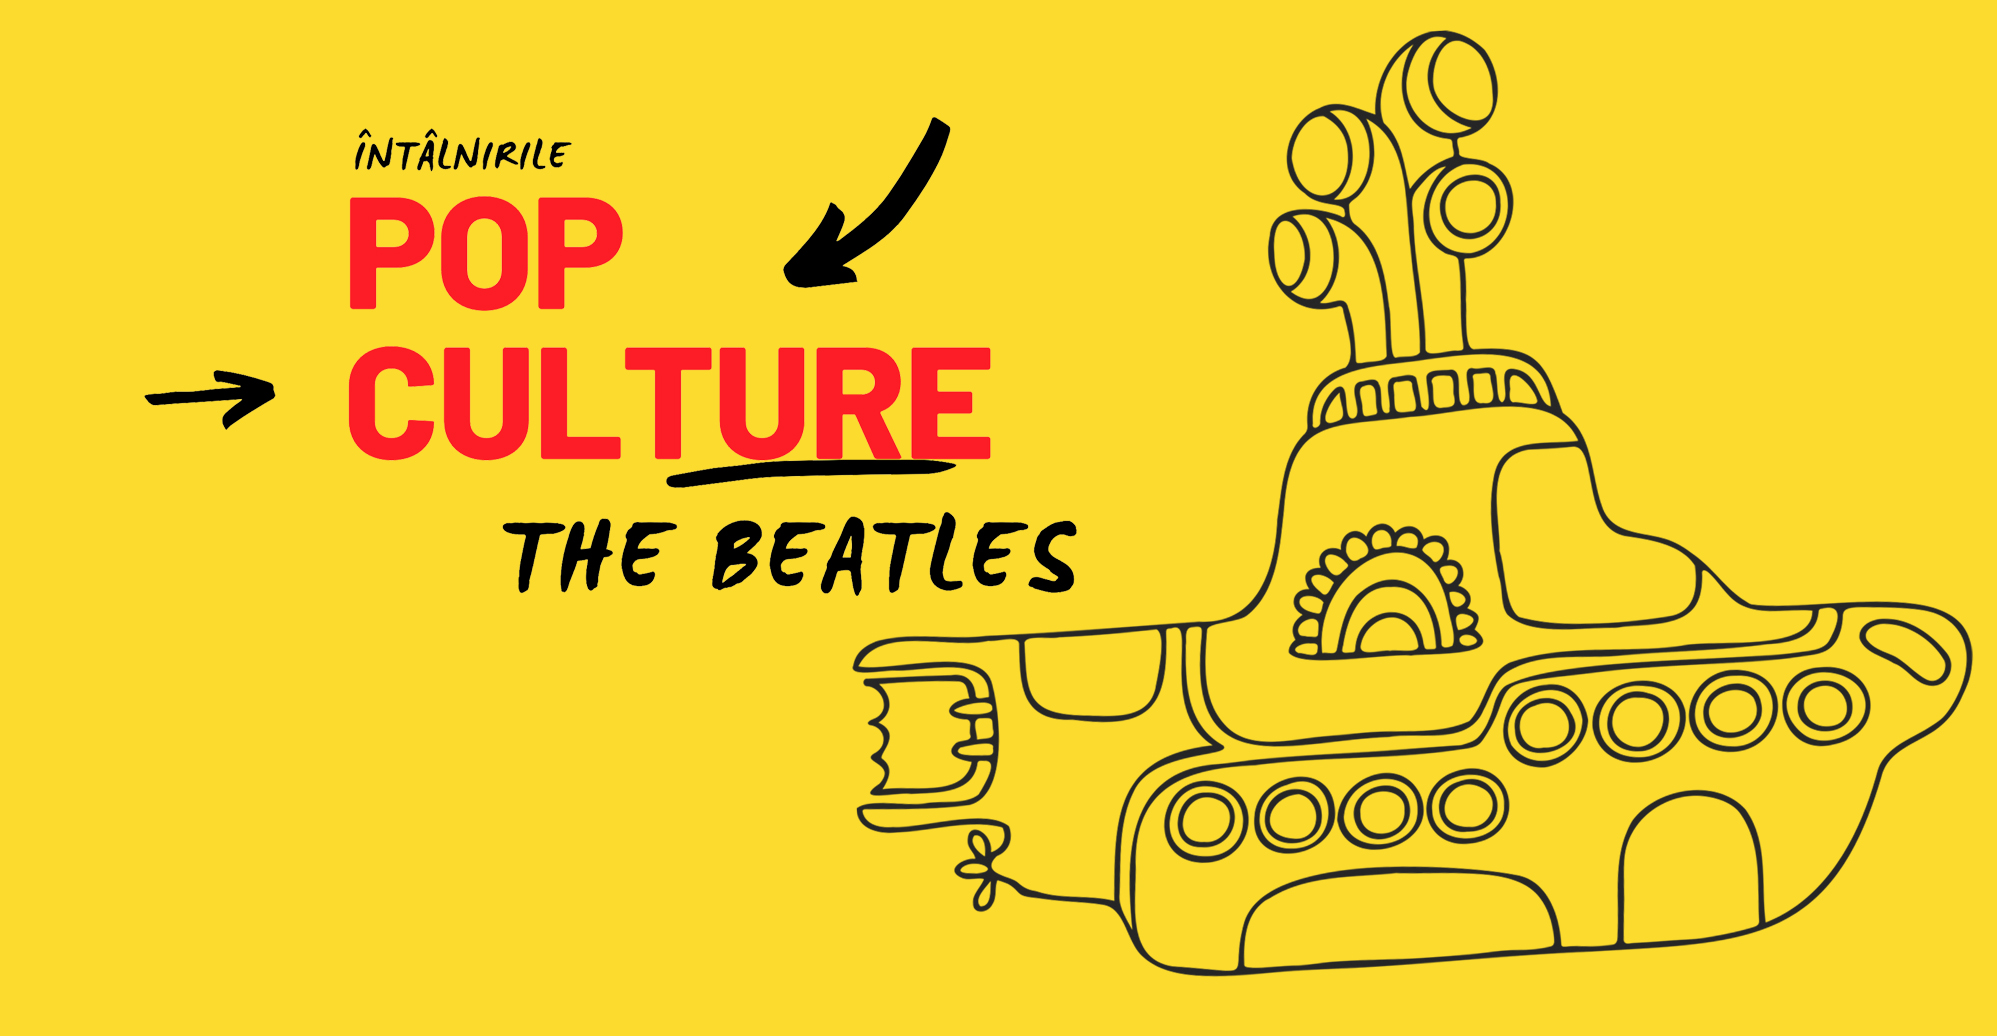 Întâlnirile Pop Culture: The Beatles